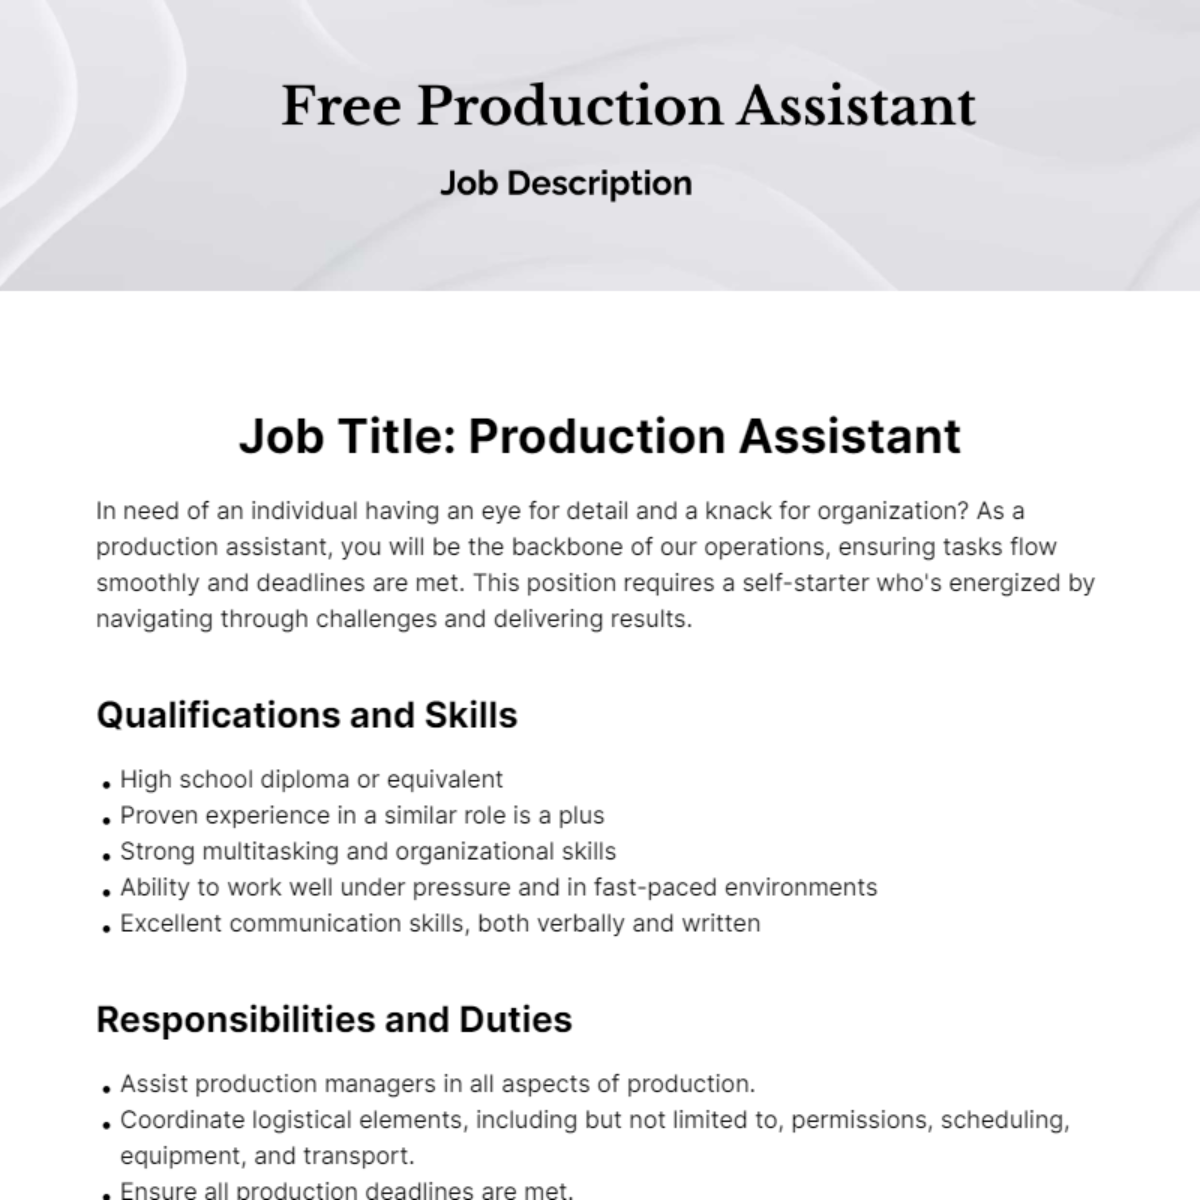 Free Production Assistant Job Description Template